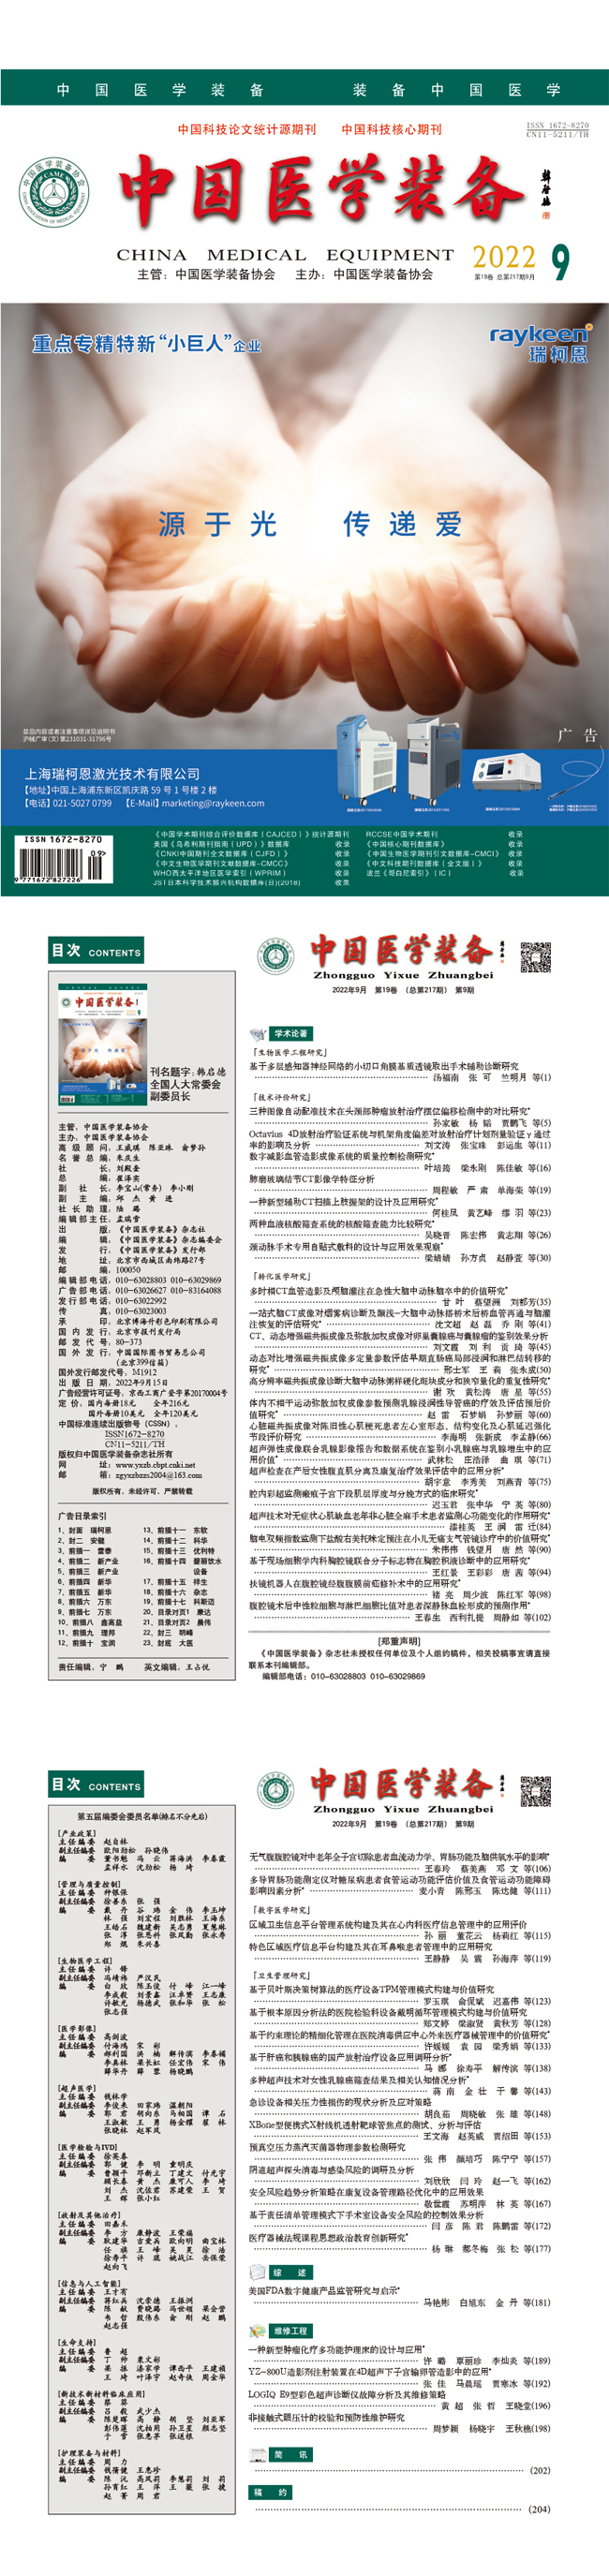 《中国医学装备》2022年9期出版(图1)